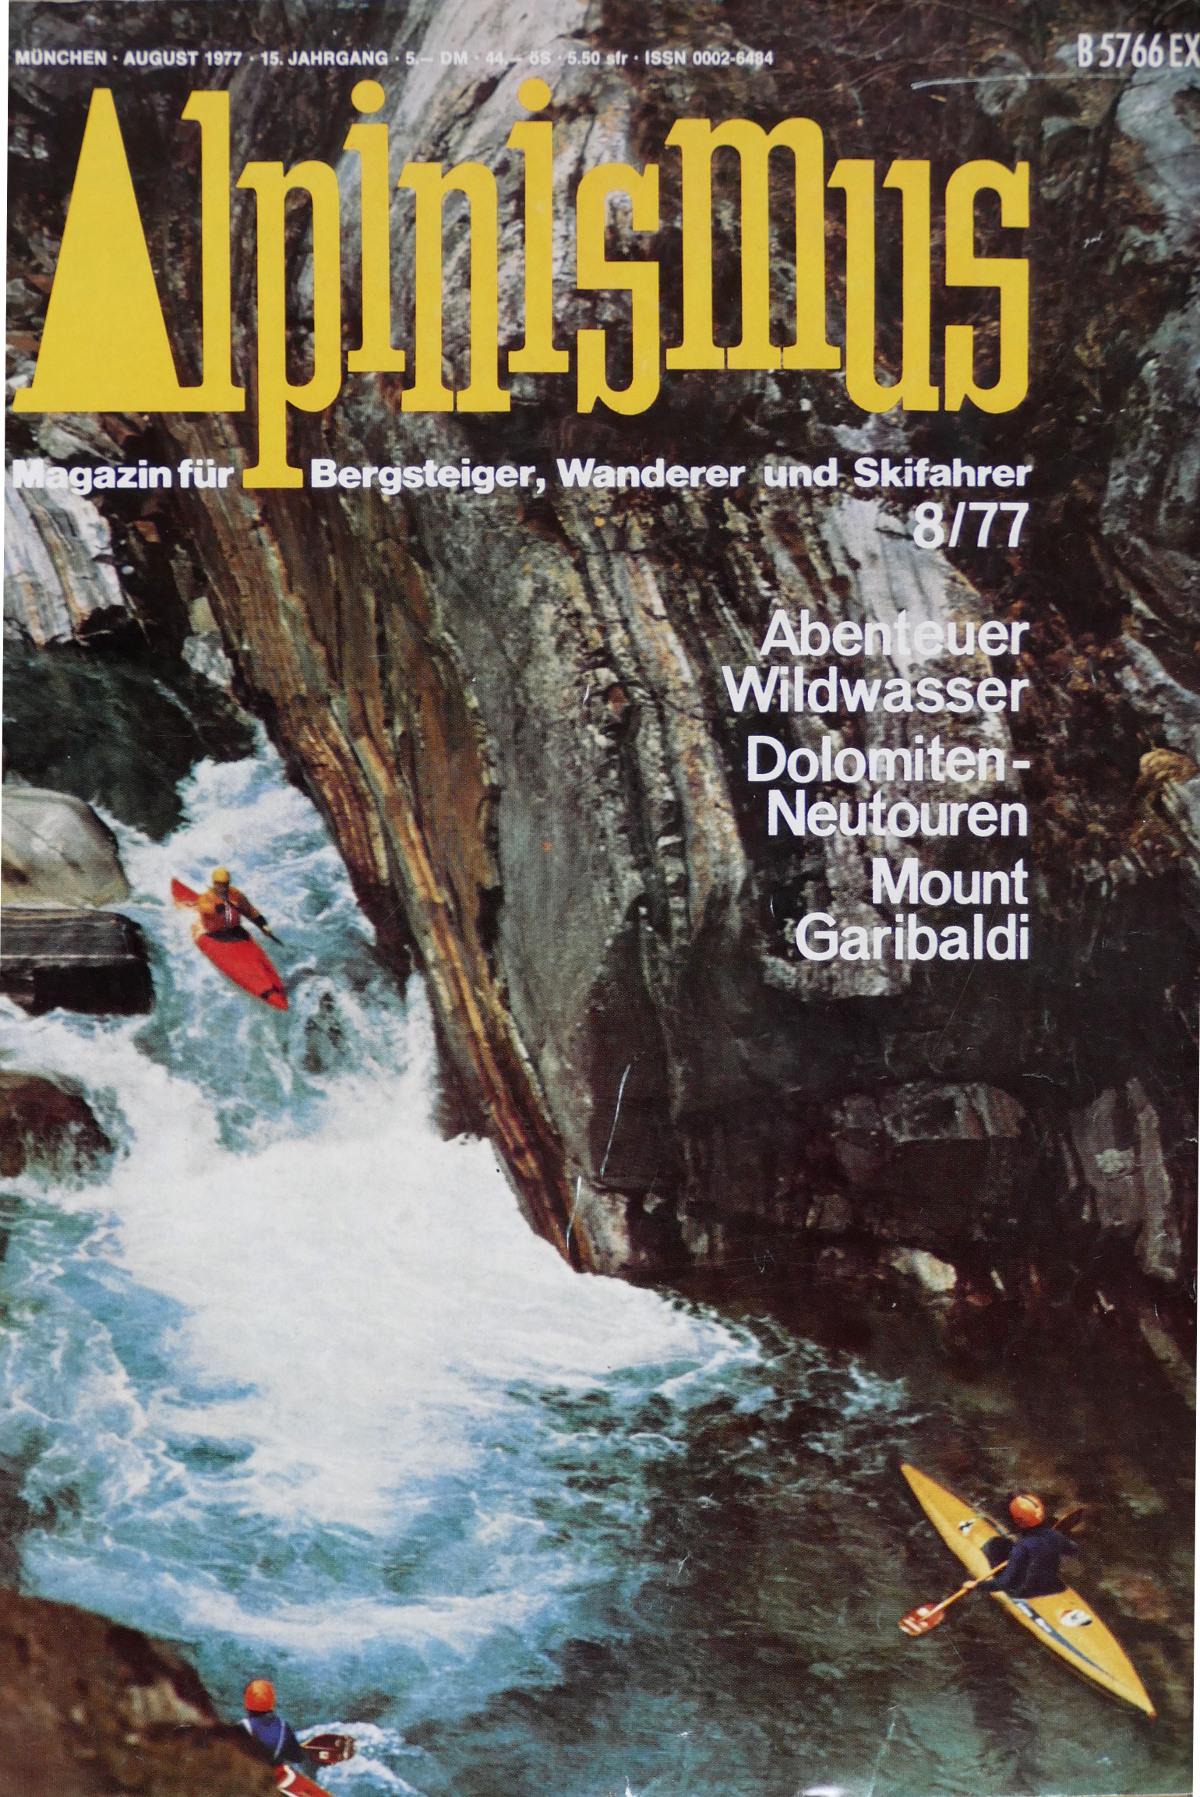 Alpinismus war das Leitmedium des Bergsports der 70er Jahre und kostete damals 5,- DM